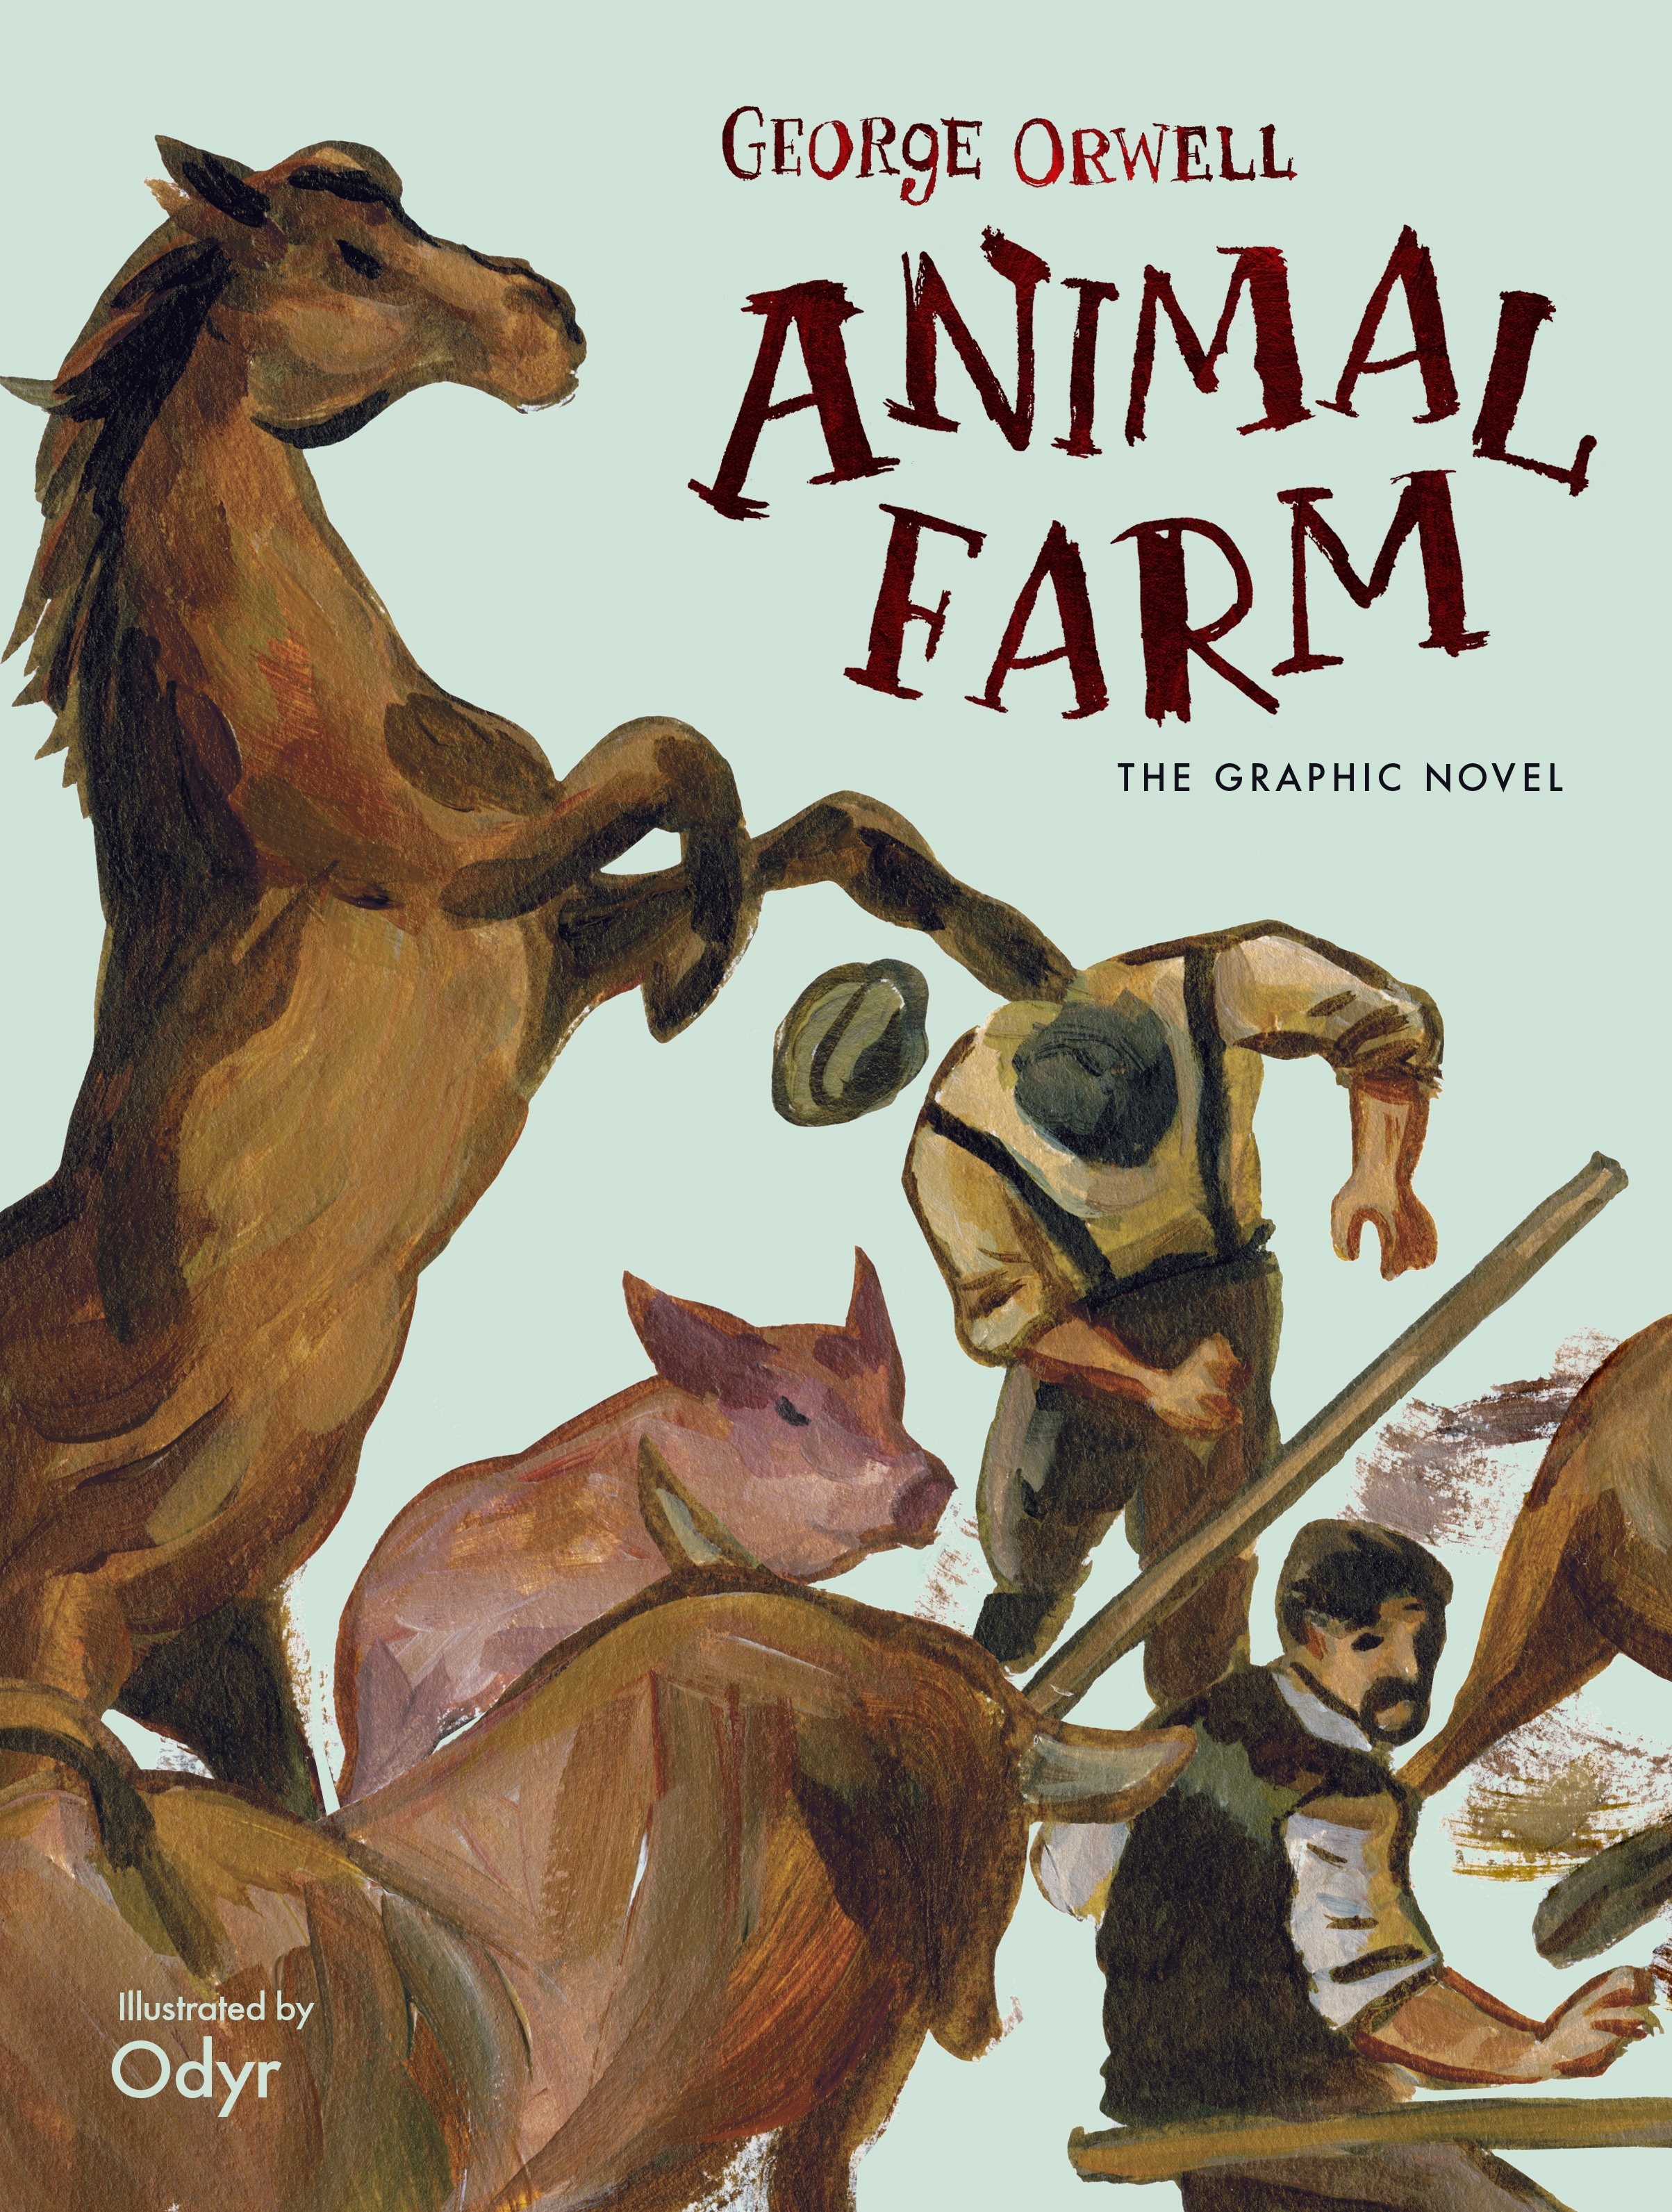 Book “Animal Farm” by George Orwell, Odyr — September 5, 2019